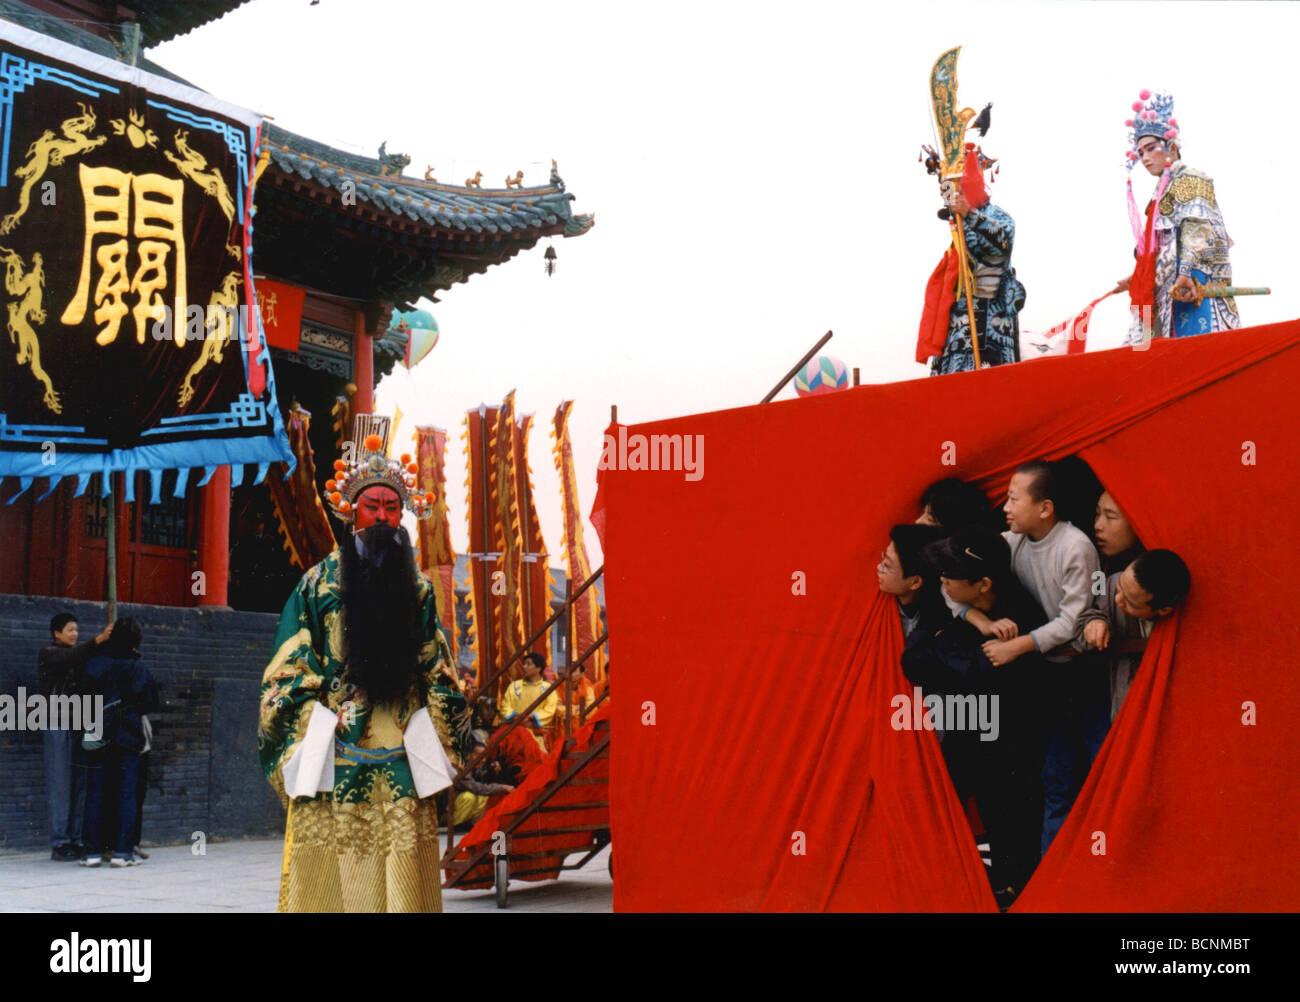 Jungen Schauspieler Oper in voller Custome aus unter die Bühne von Henan Opernaufführung, Provinz Henan, China zu betrachten Stockfoto